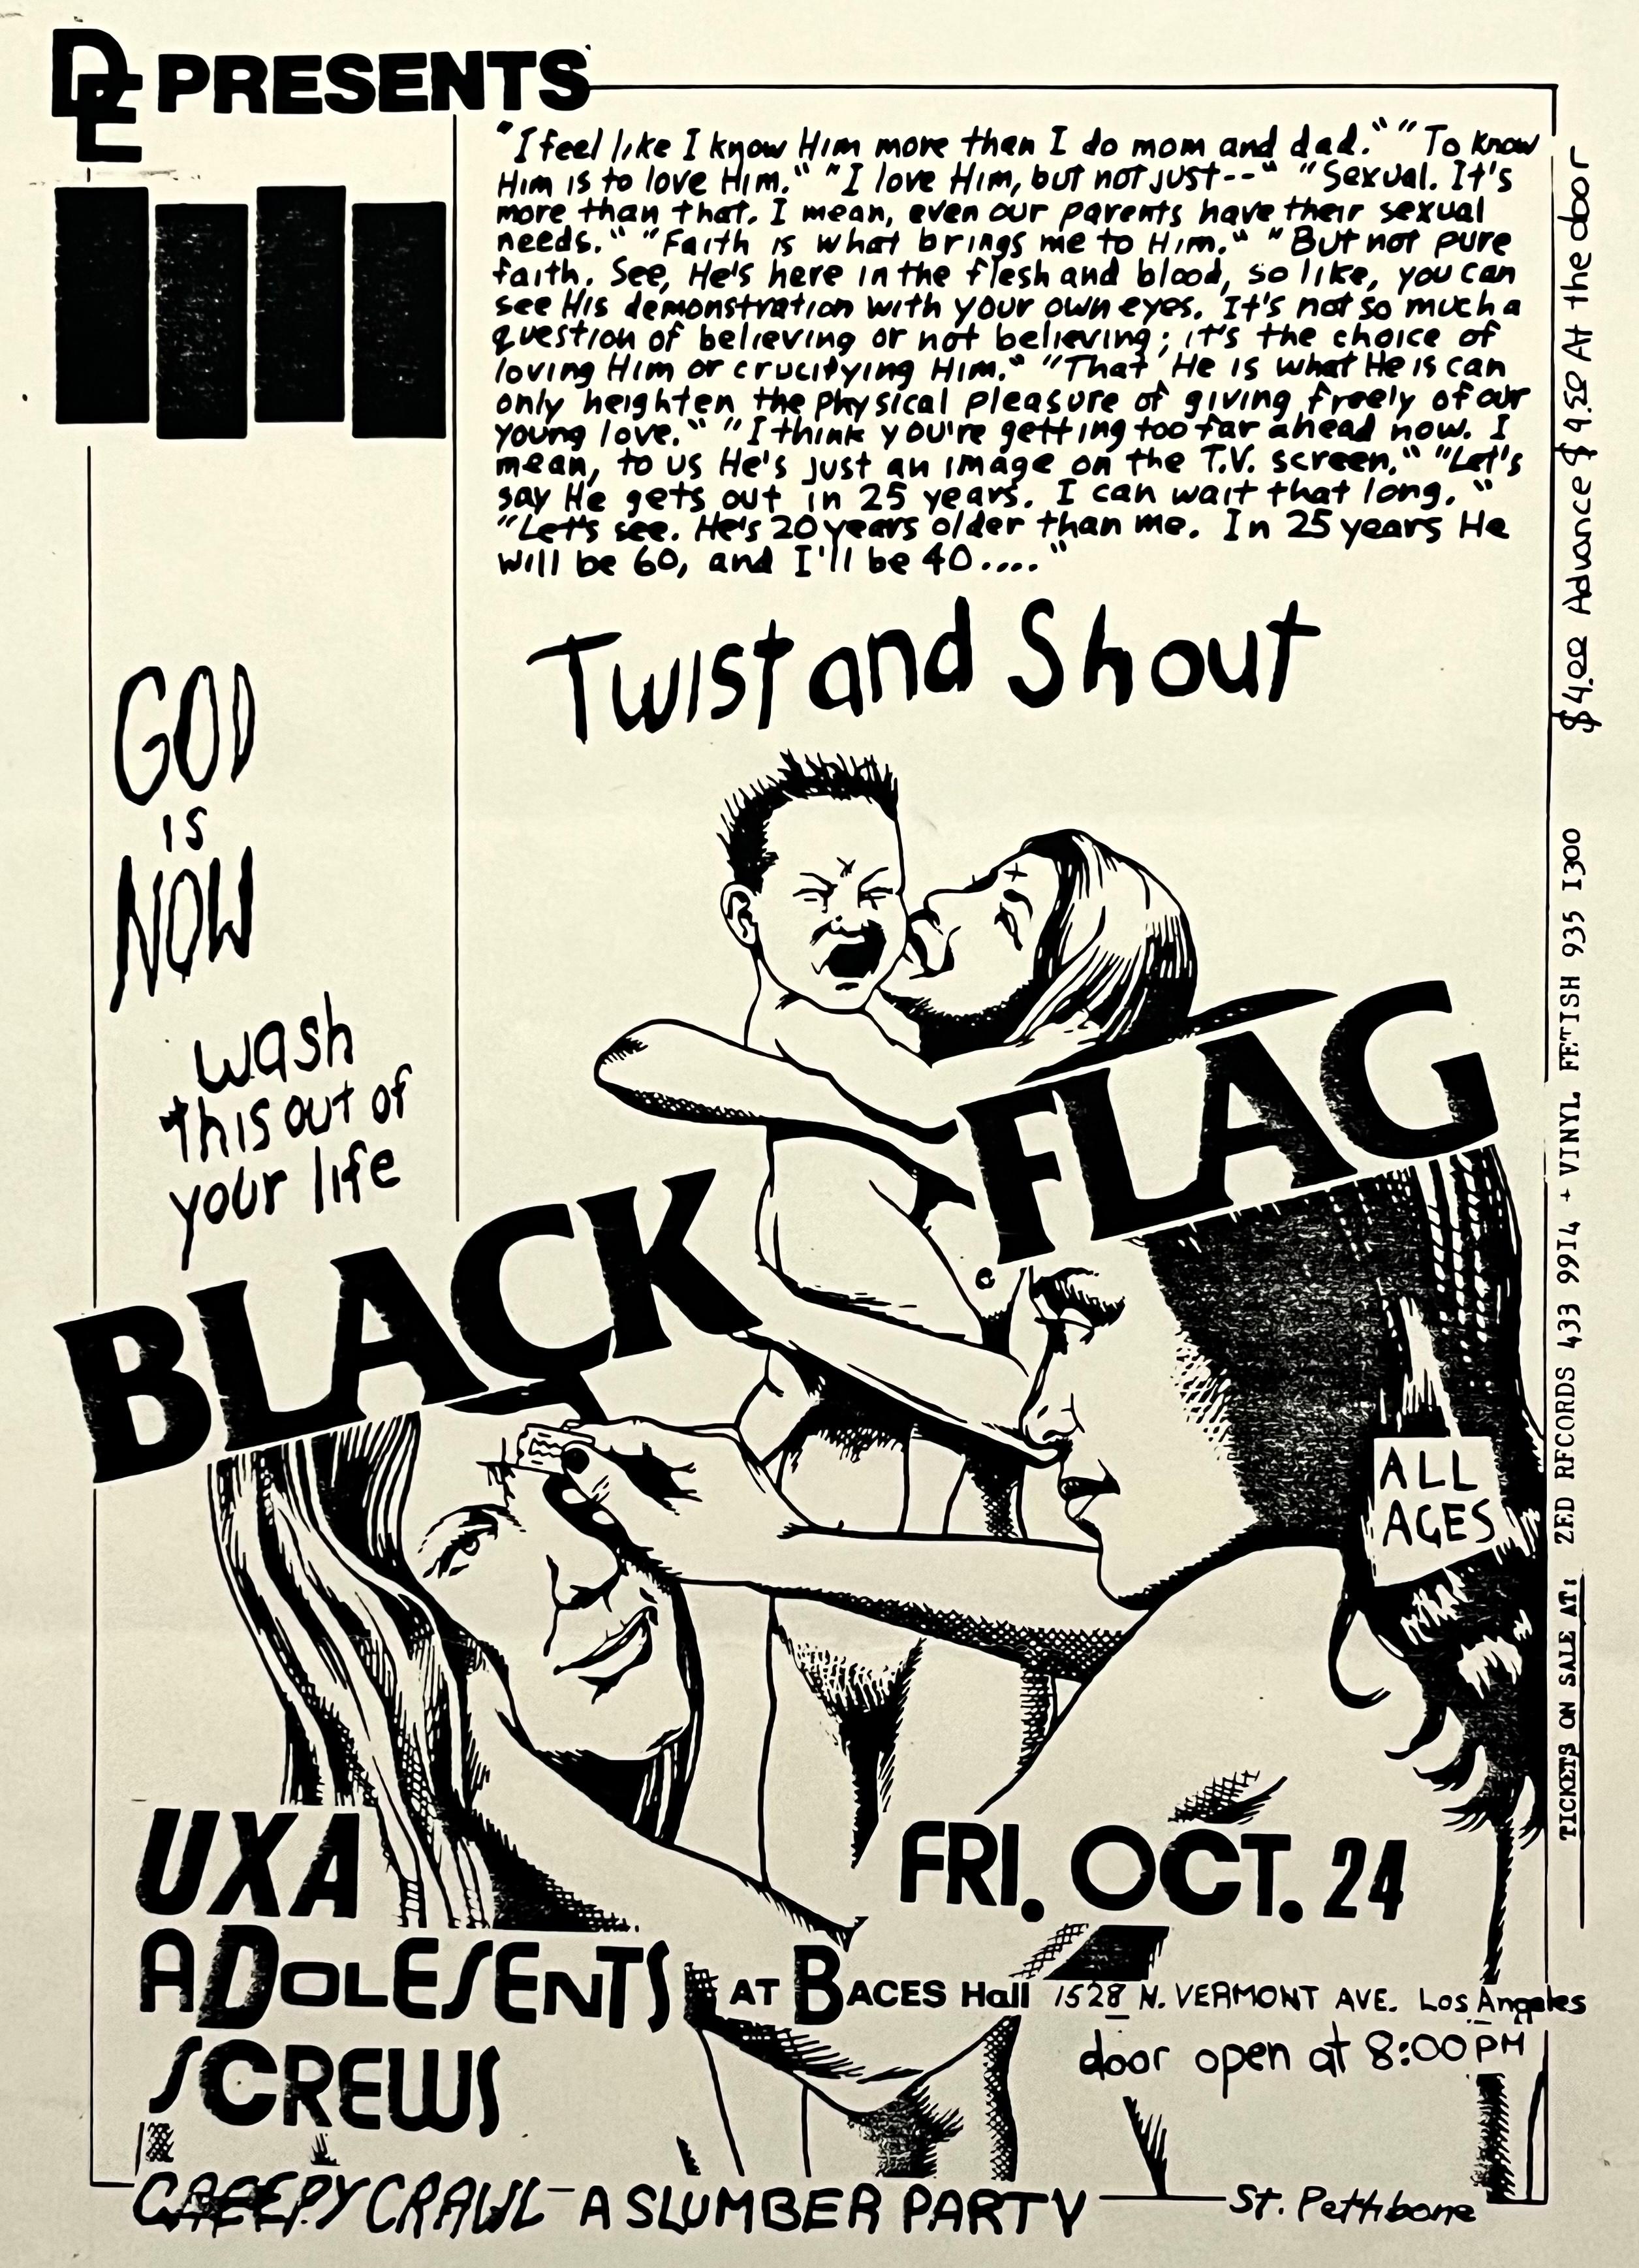 Tract illustré de Raymond Pettibon pour Black Flag, New York City 1981 :
Rare flyer punk du début des années 1980 illustré par Pettibon pour annoncer l'un des premiers concerts de Black Flag sur la côte Est, au Peppermint Lounge, New York, NY : 14